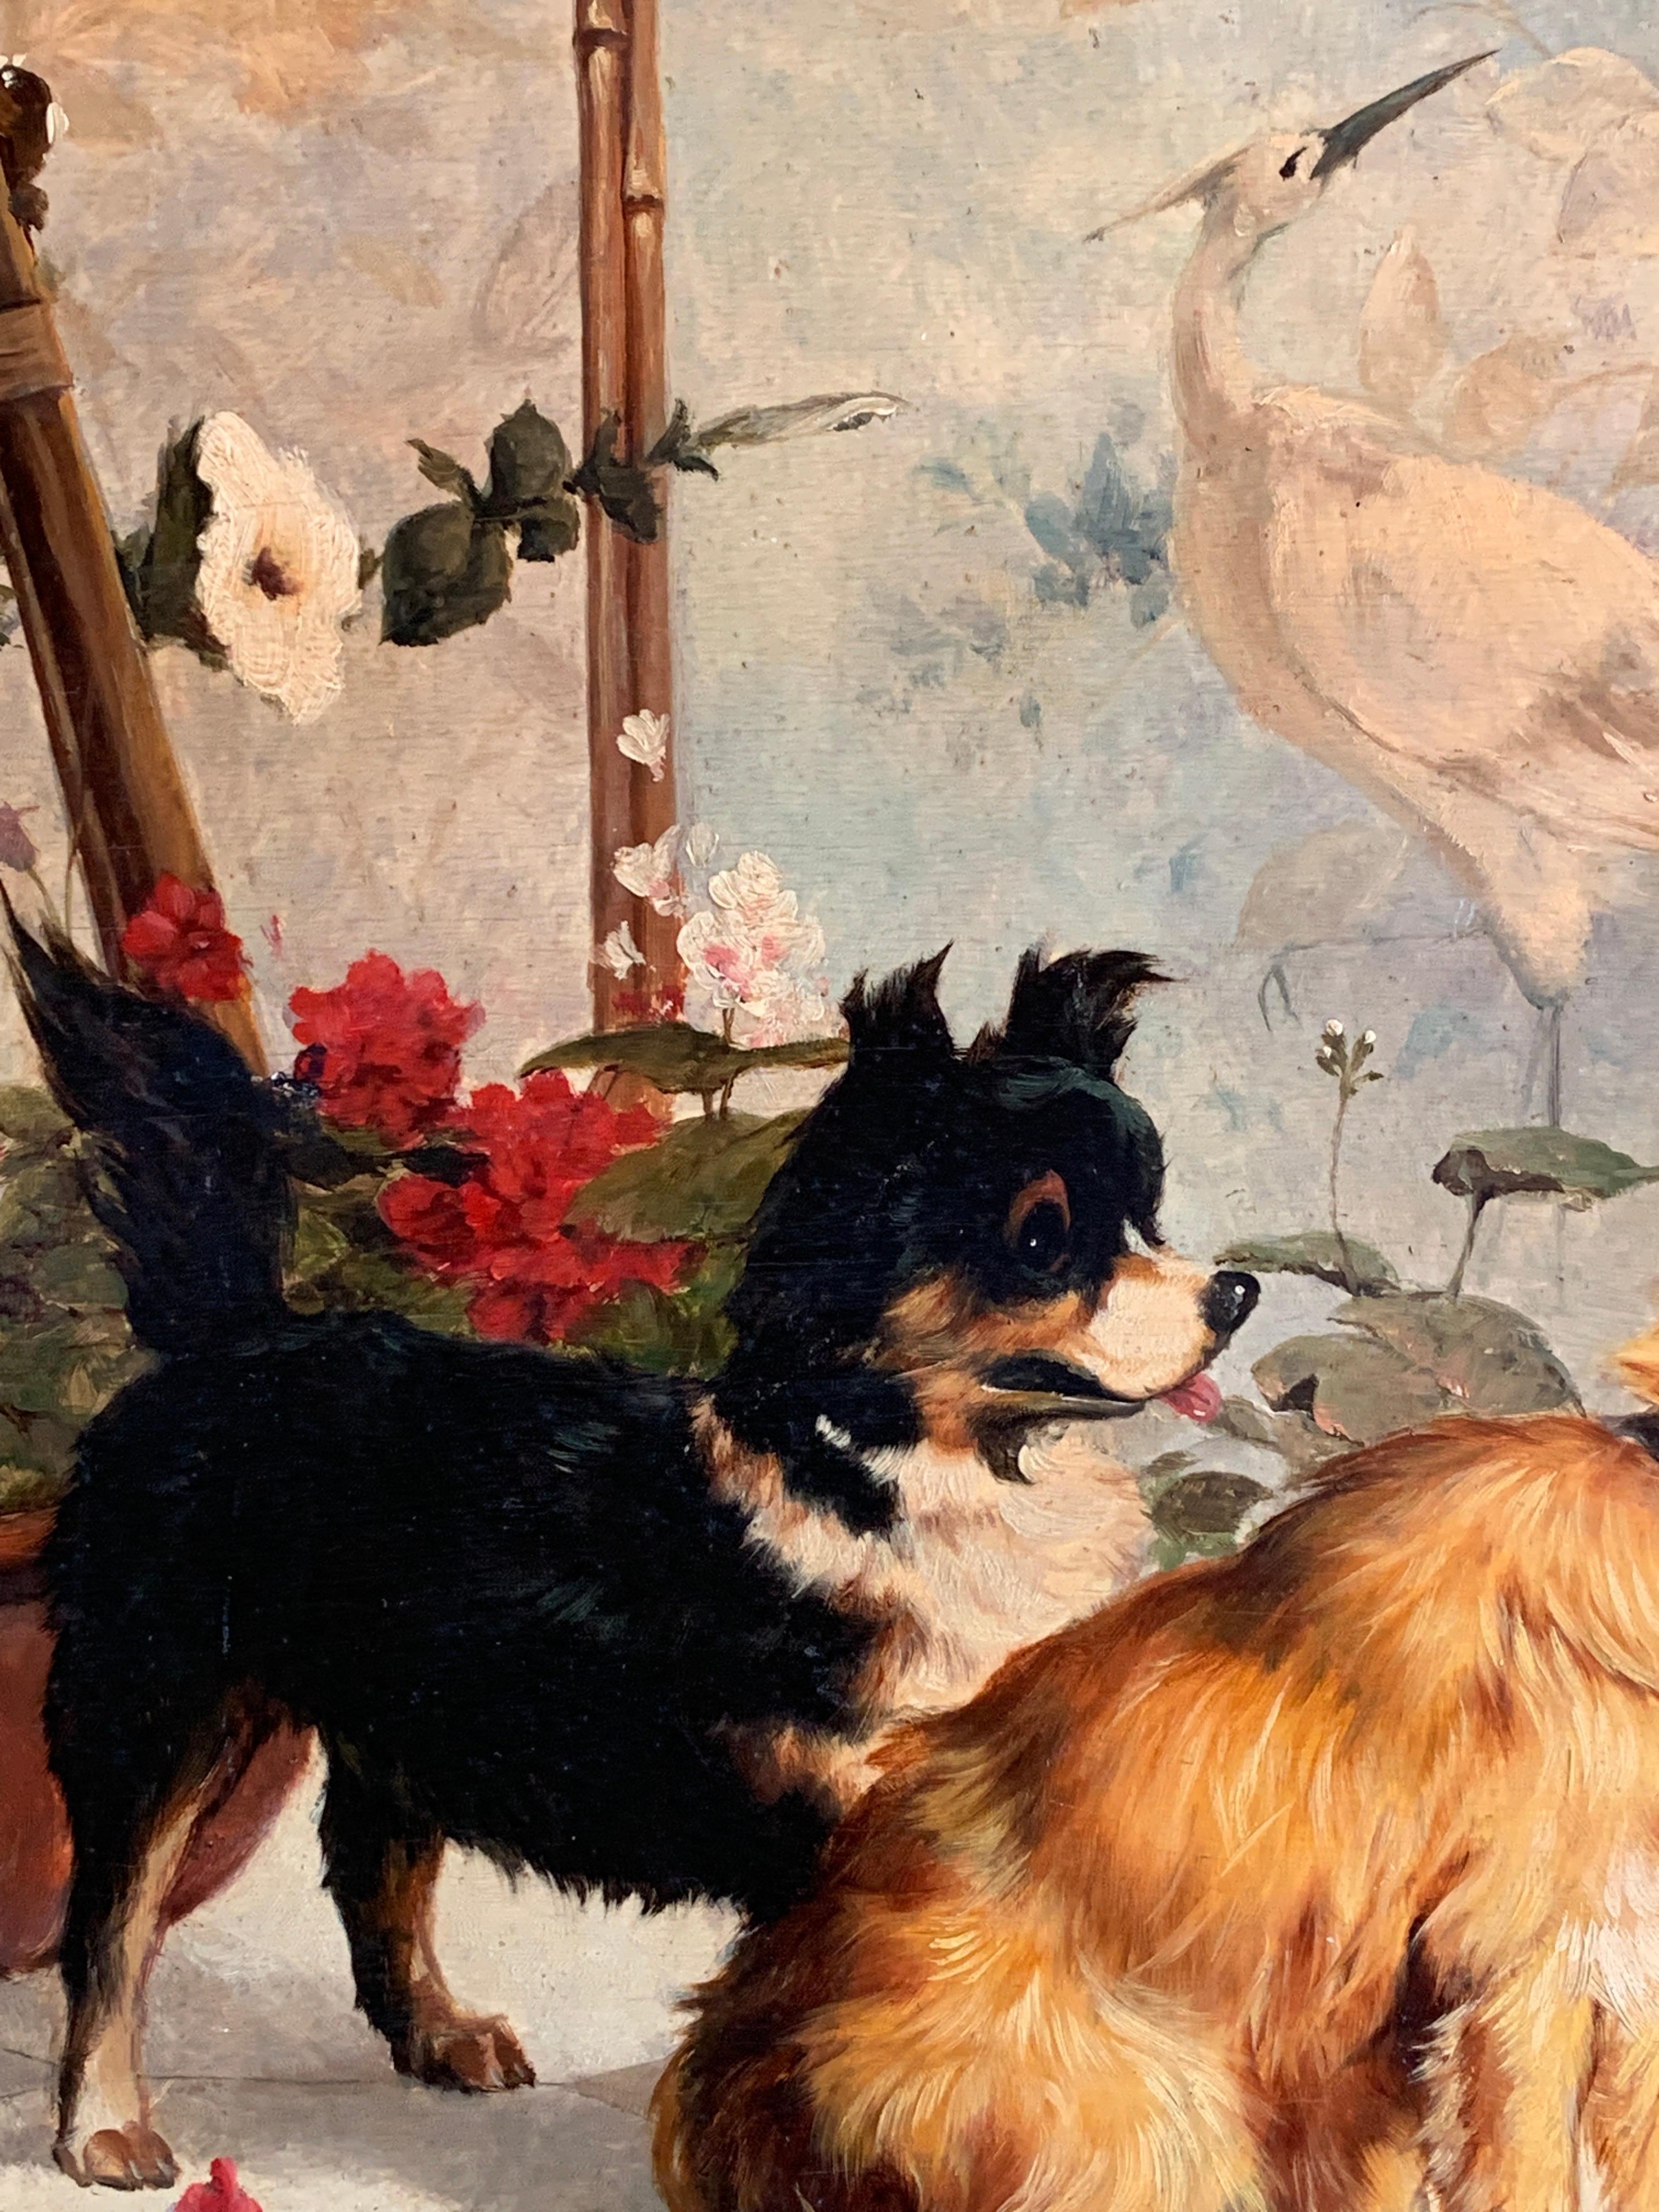 Sehr dekorative Tierszene mit zwei Hunden in einem Interieur, die eine Katze überraschen, die auf sie zugeht. 

Grover Hawking war ein Maler des späten 20. Jahrhunderts, der in New Jersey und Long Island tätig war.

Dies ist ein typisches Beispiel